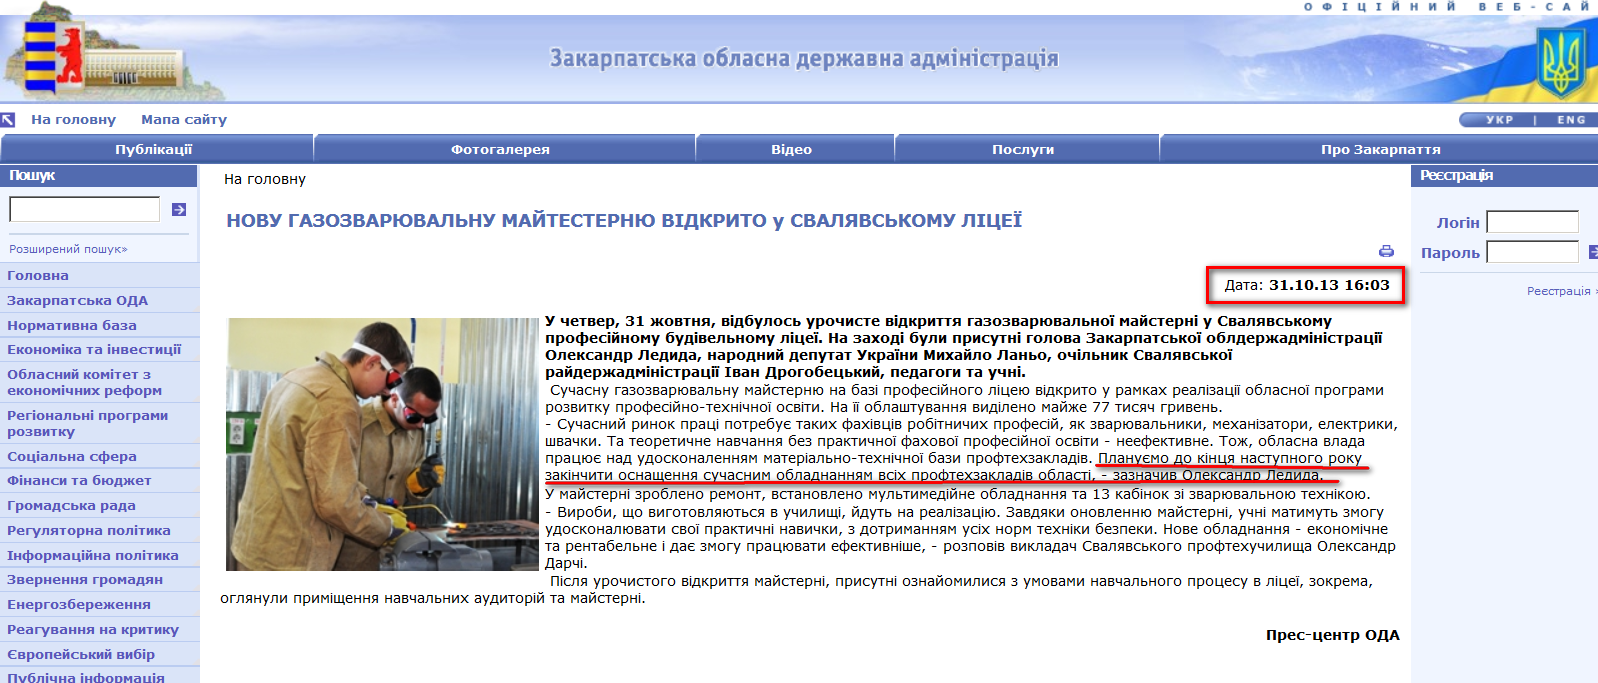 http://www.carpathia.gov.ua/ua/publication/content/8675.htm